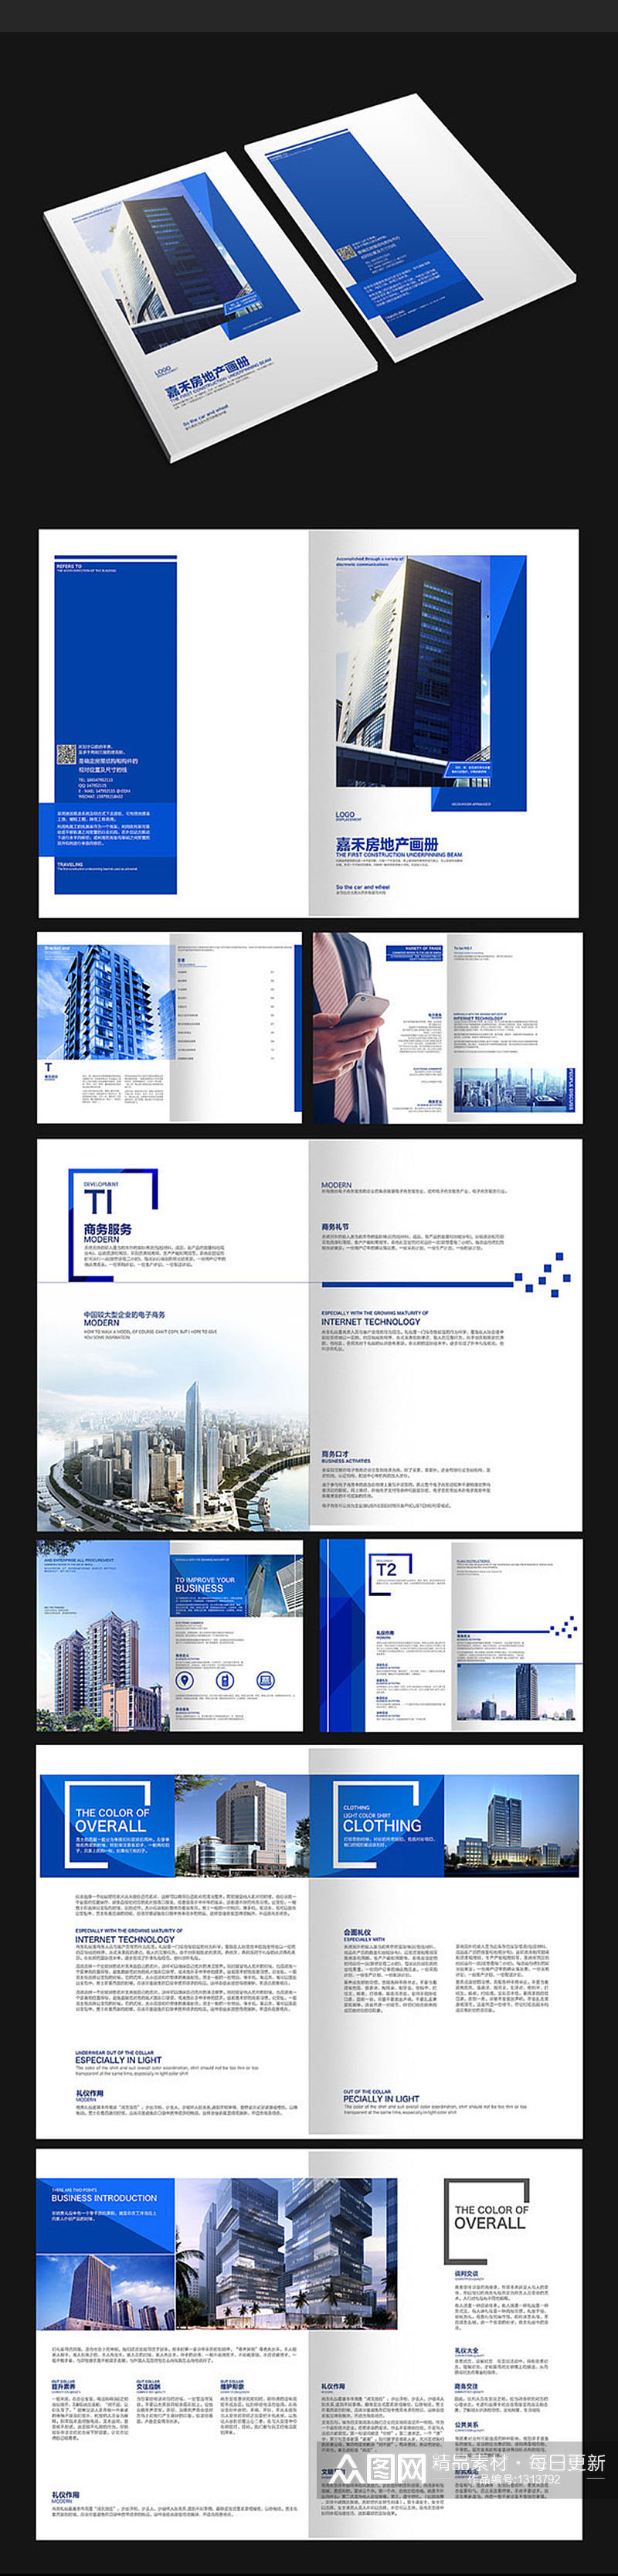 蓝色大楼画册设计素材